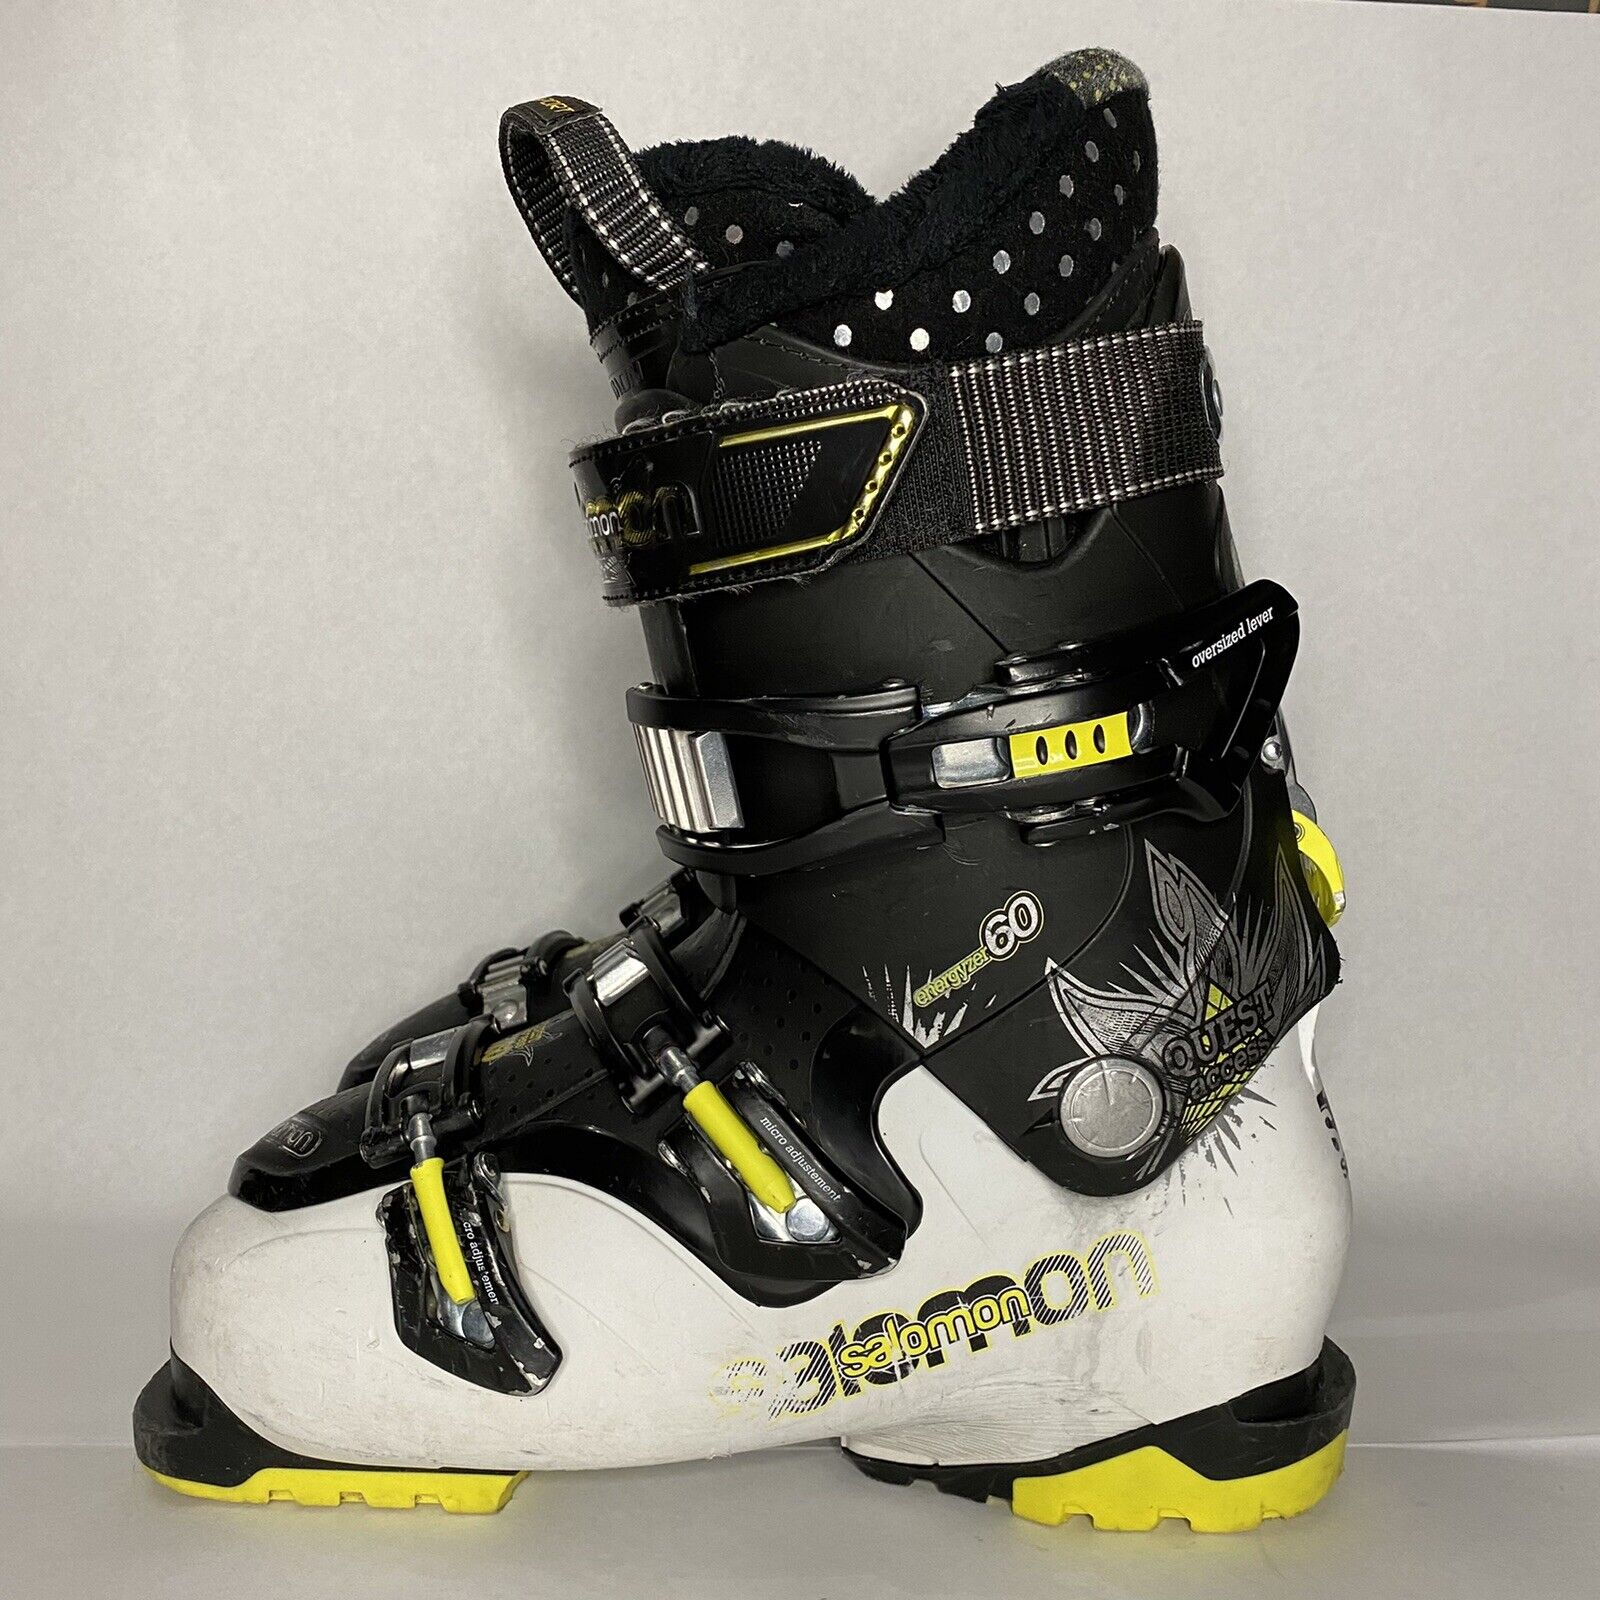 Salomon Quest Access X60 Ski Boots Size 26.0 - 26.5 308mm